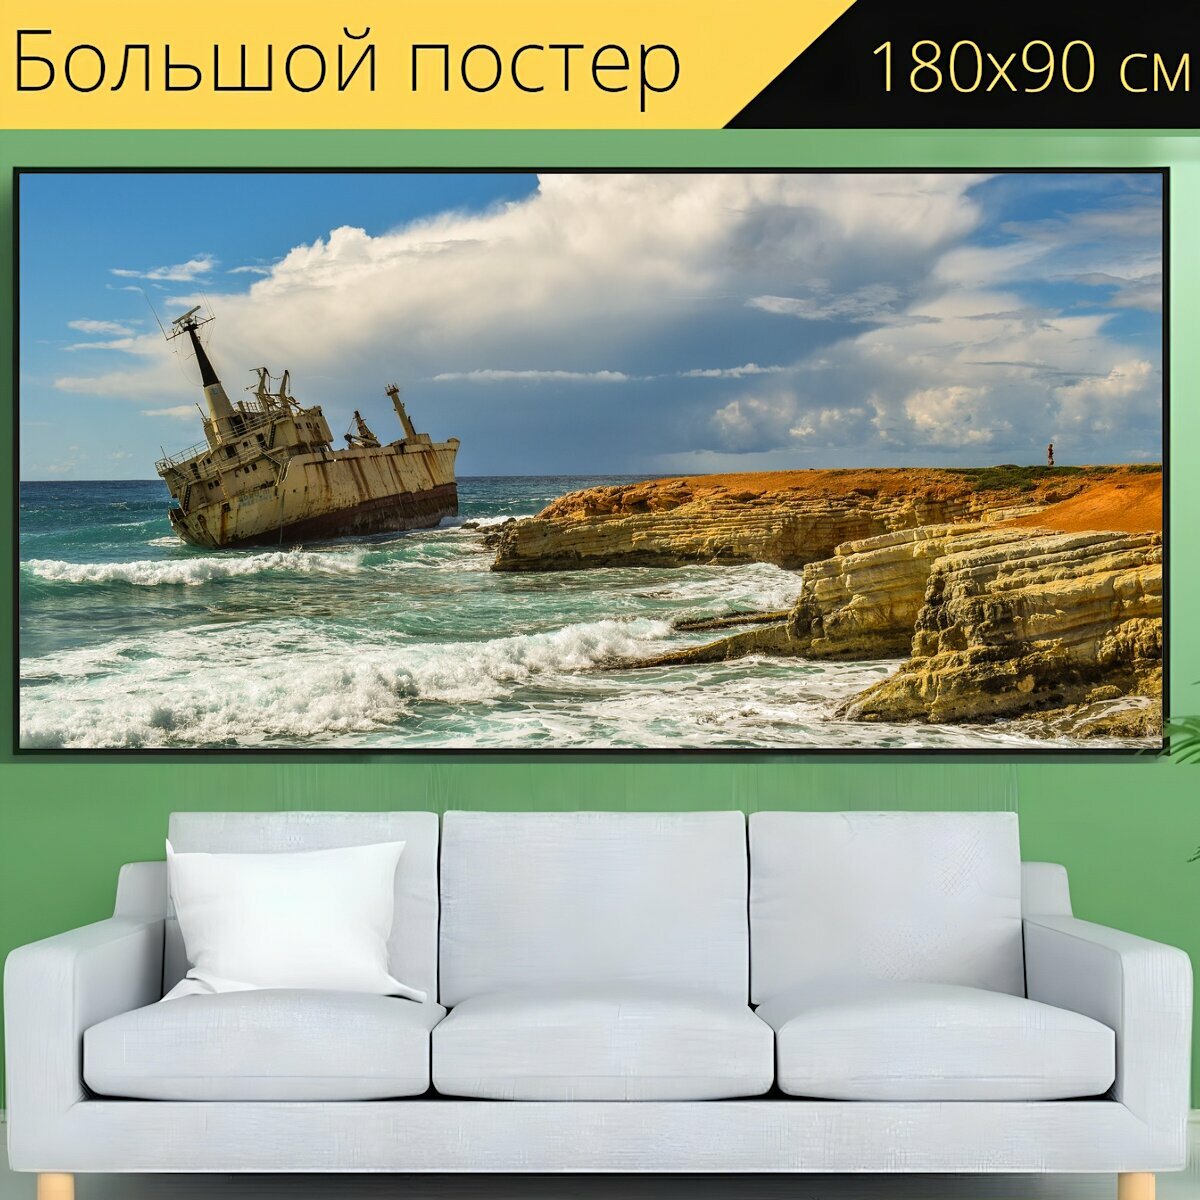 Большой постер "Скалистый берег, море, кораблекрушение" 180 x 90 см. для интерьера